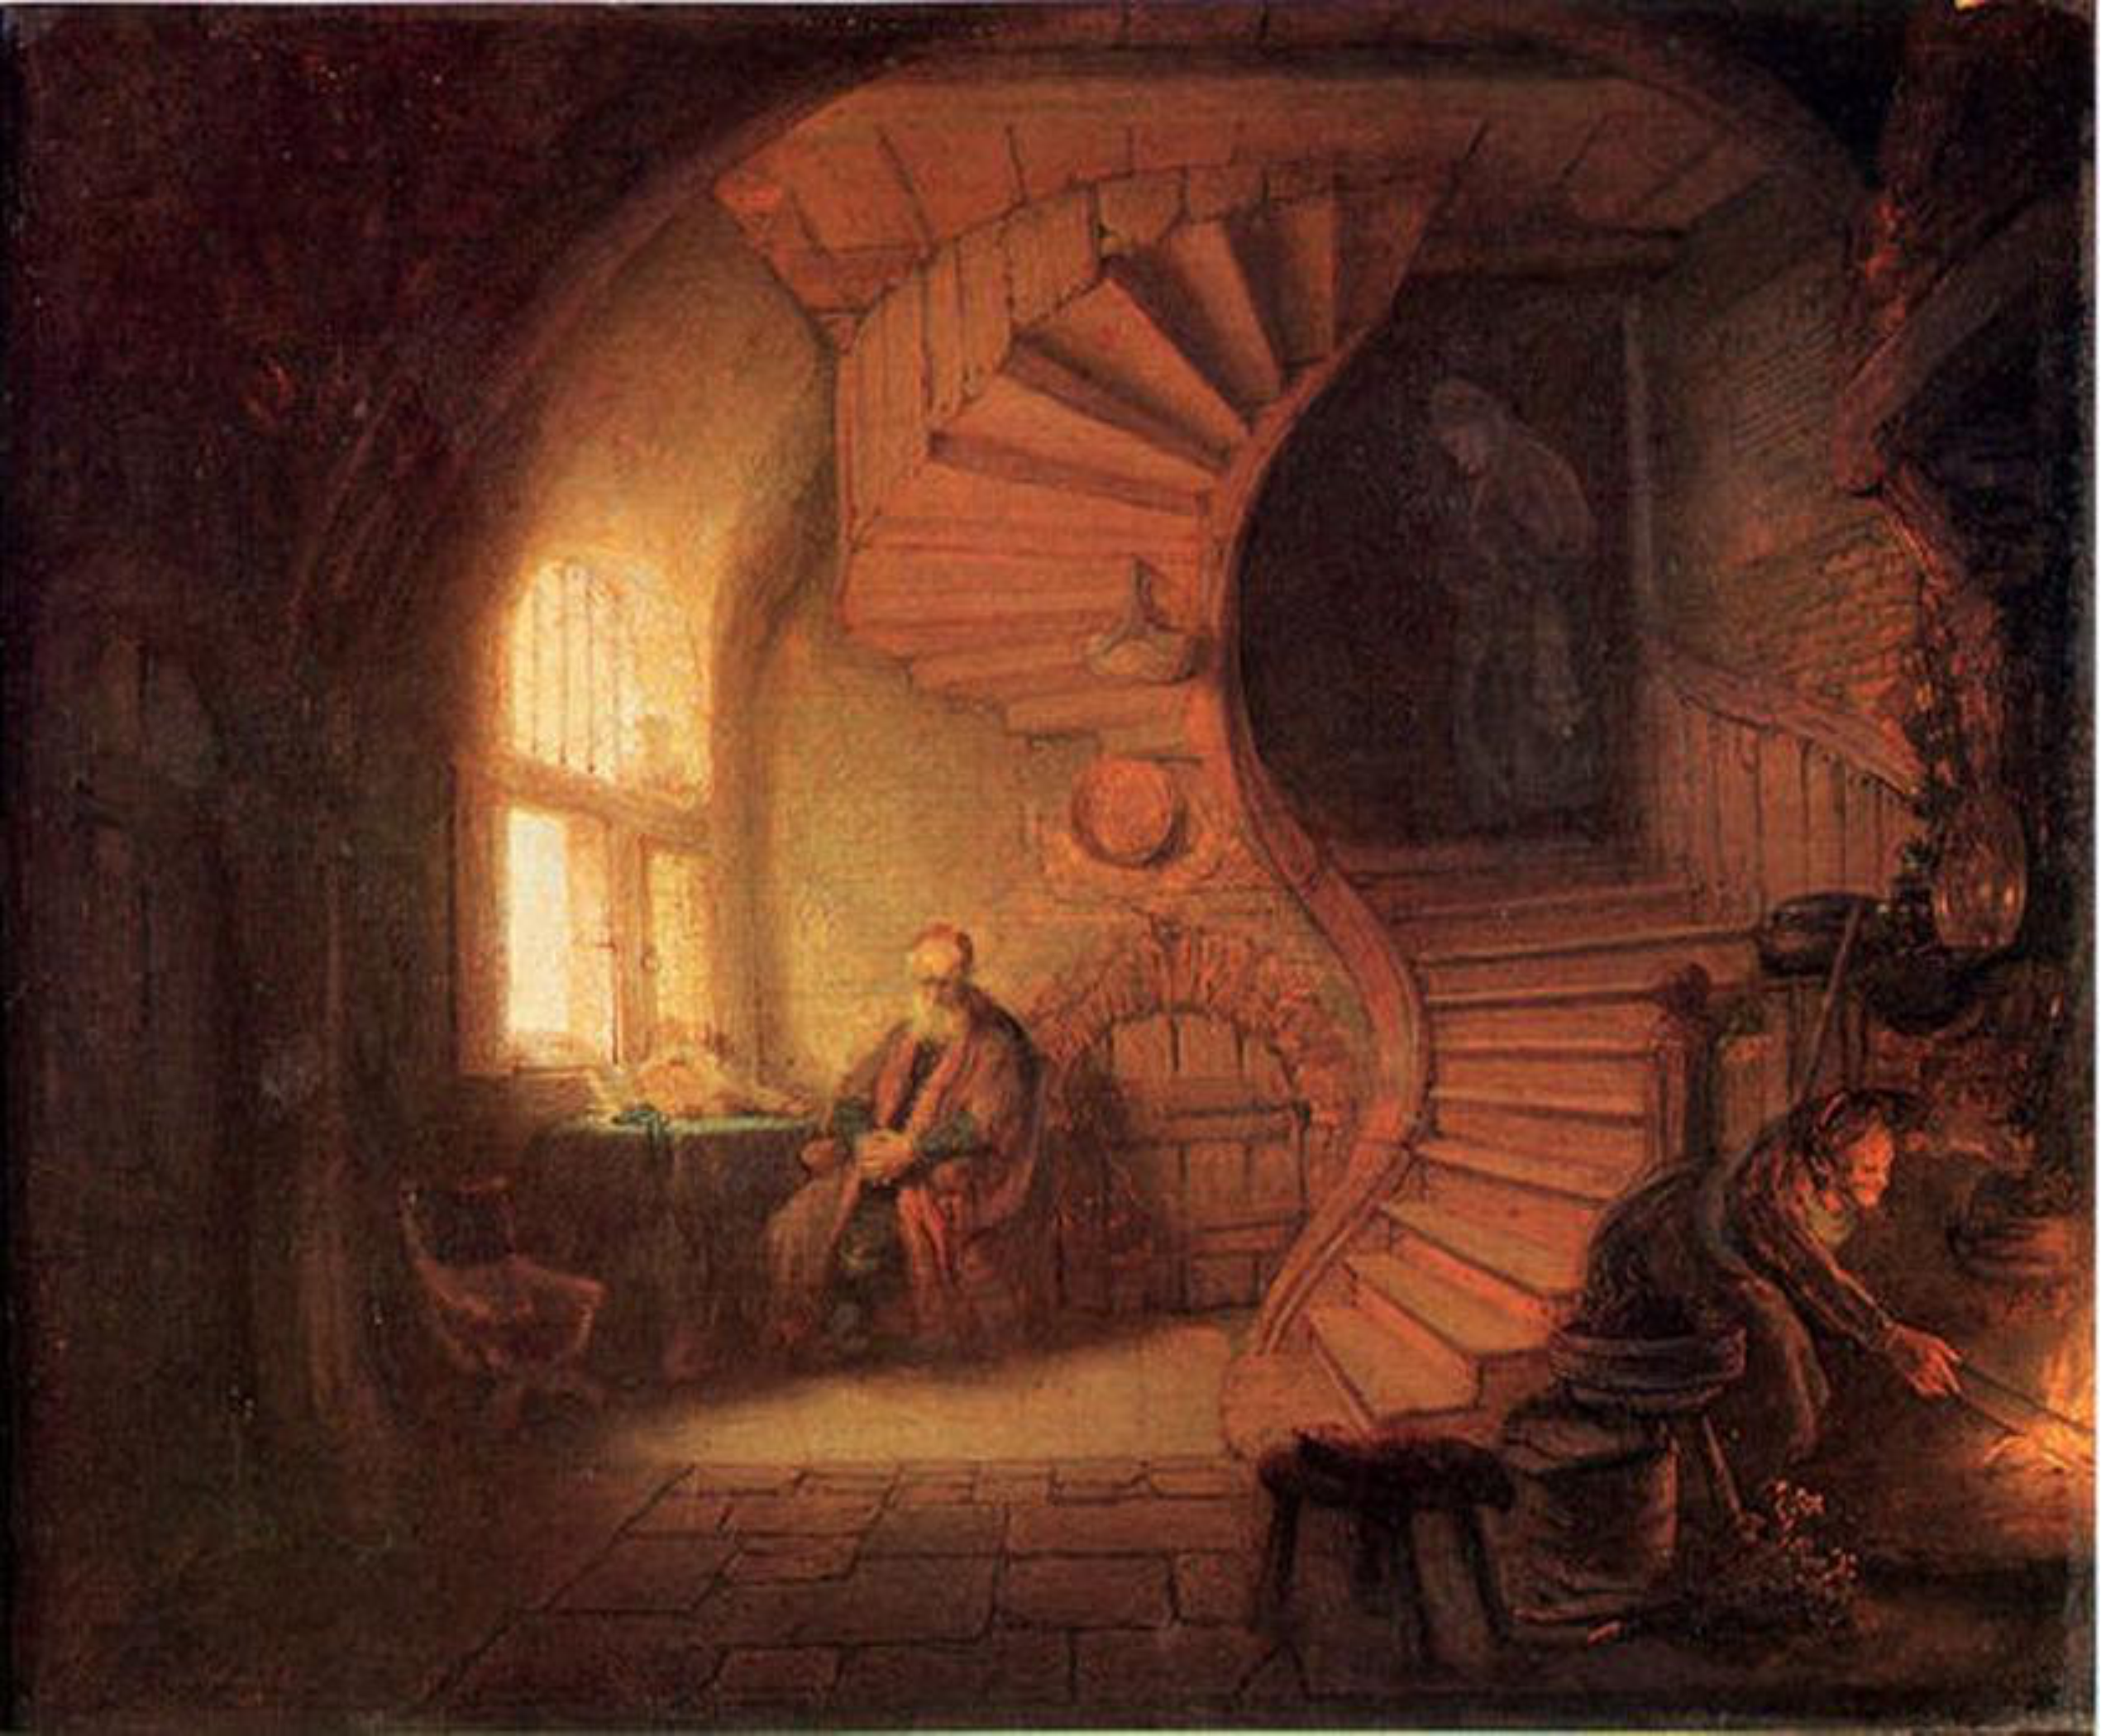 Rembrandt, Philosopher in Meditation, 1632